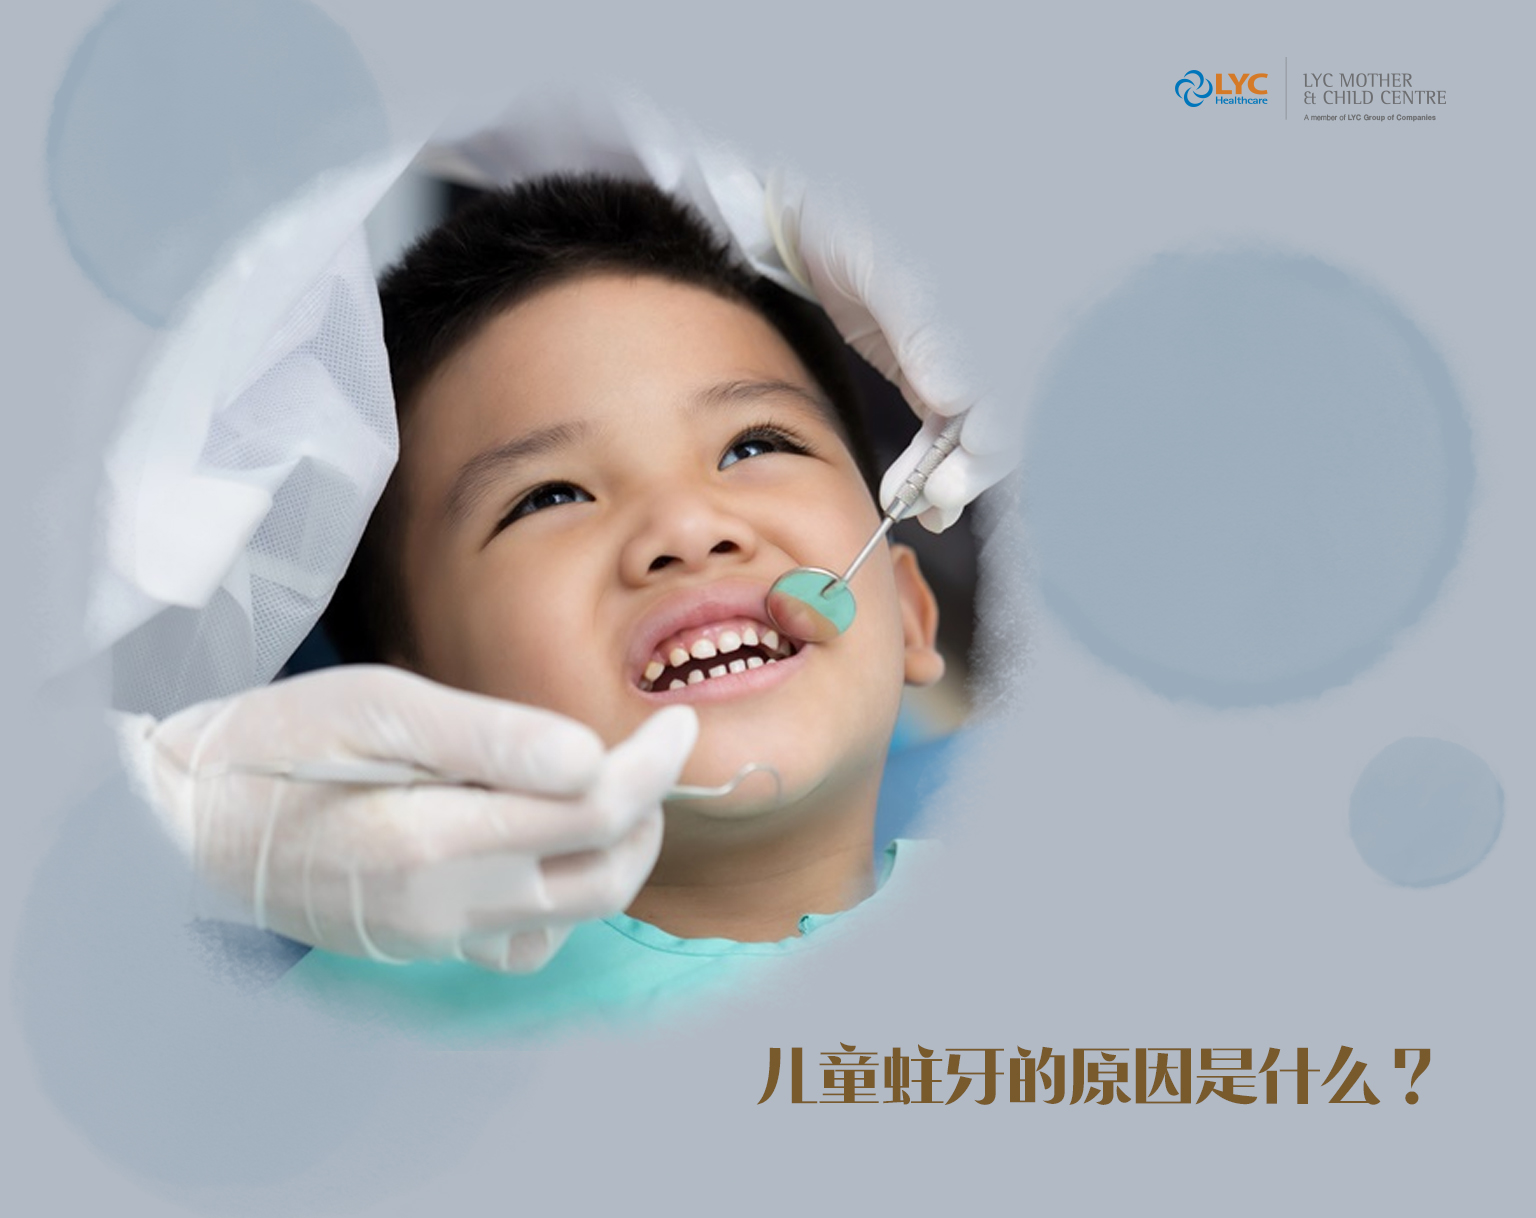 牙菌斑和色素的清洁_钟宏_住院医师_爱问健康